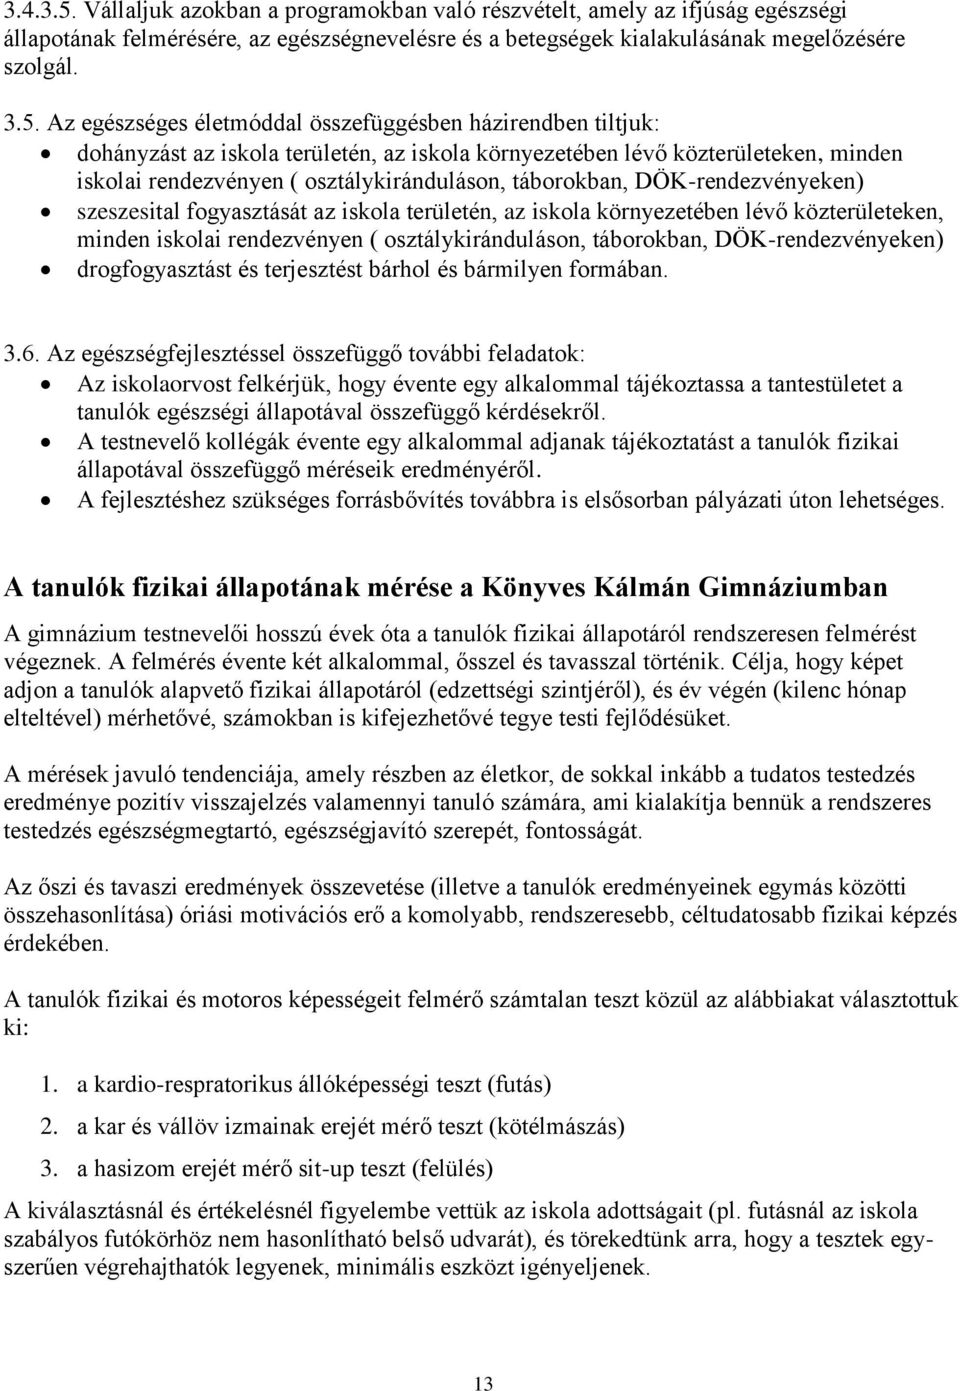 Újpesti Könyves Kálmán Gimnázium - PDF Ingyenes letöltés